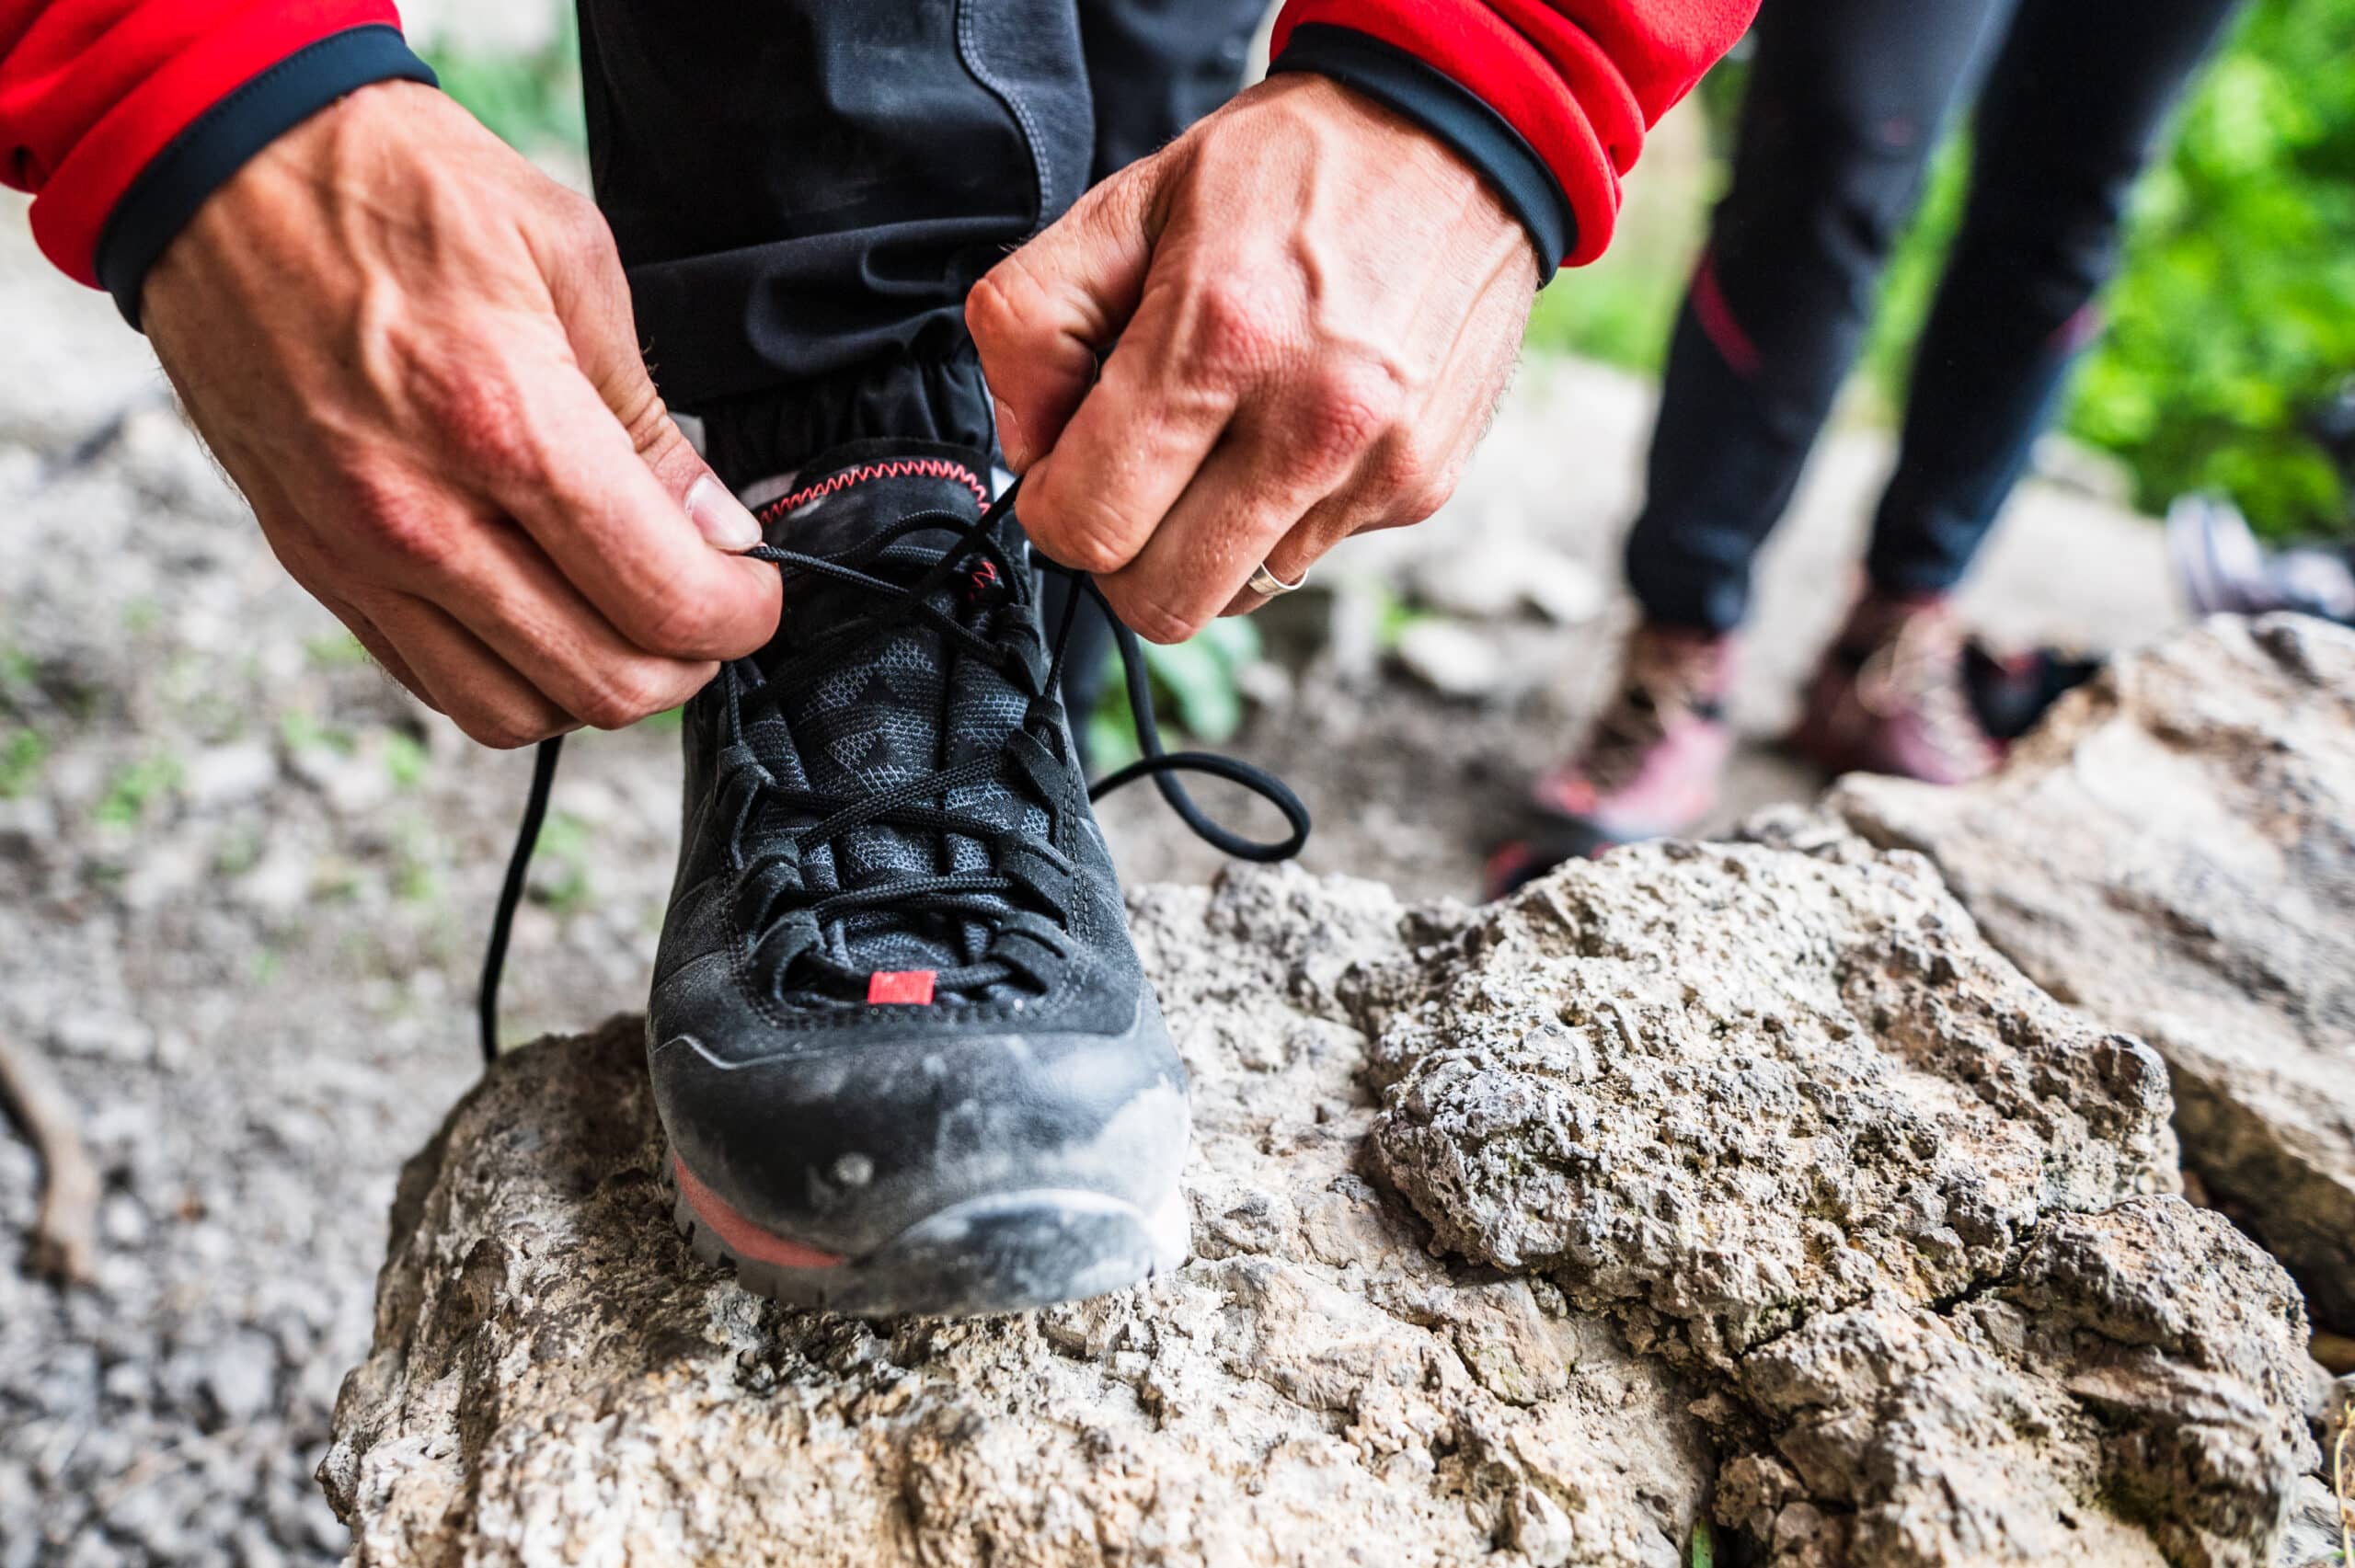 Buty podejściowe czy trekkingowe? Kompleksowy przewodnik wyboru obuwia outdoorowego.